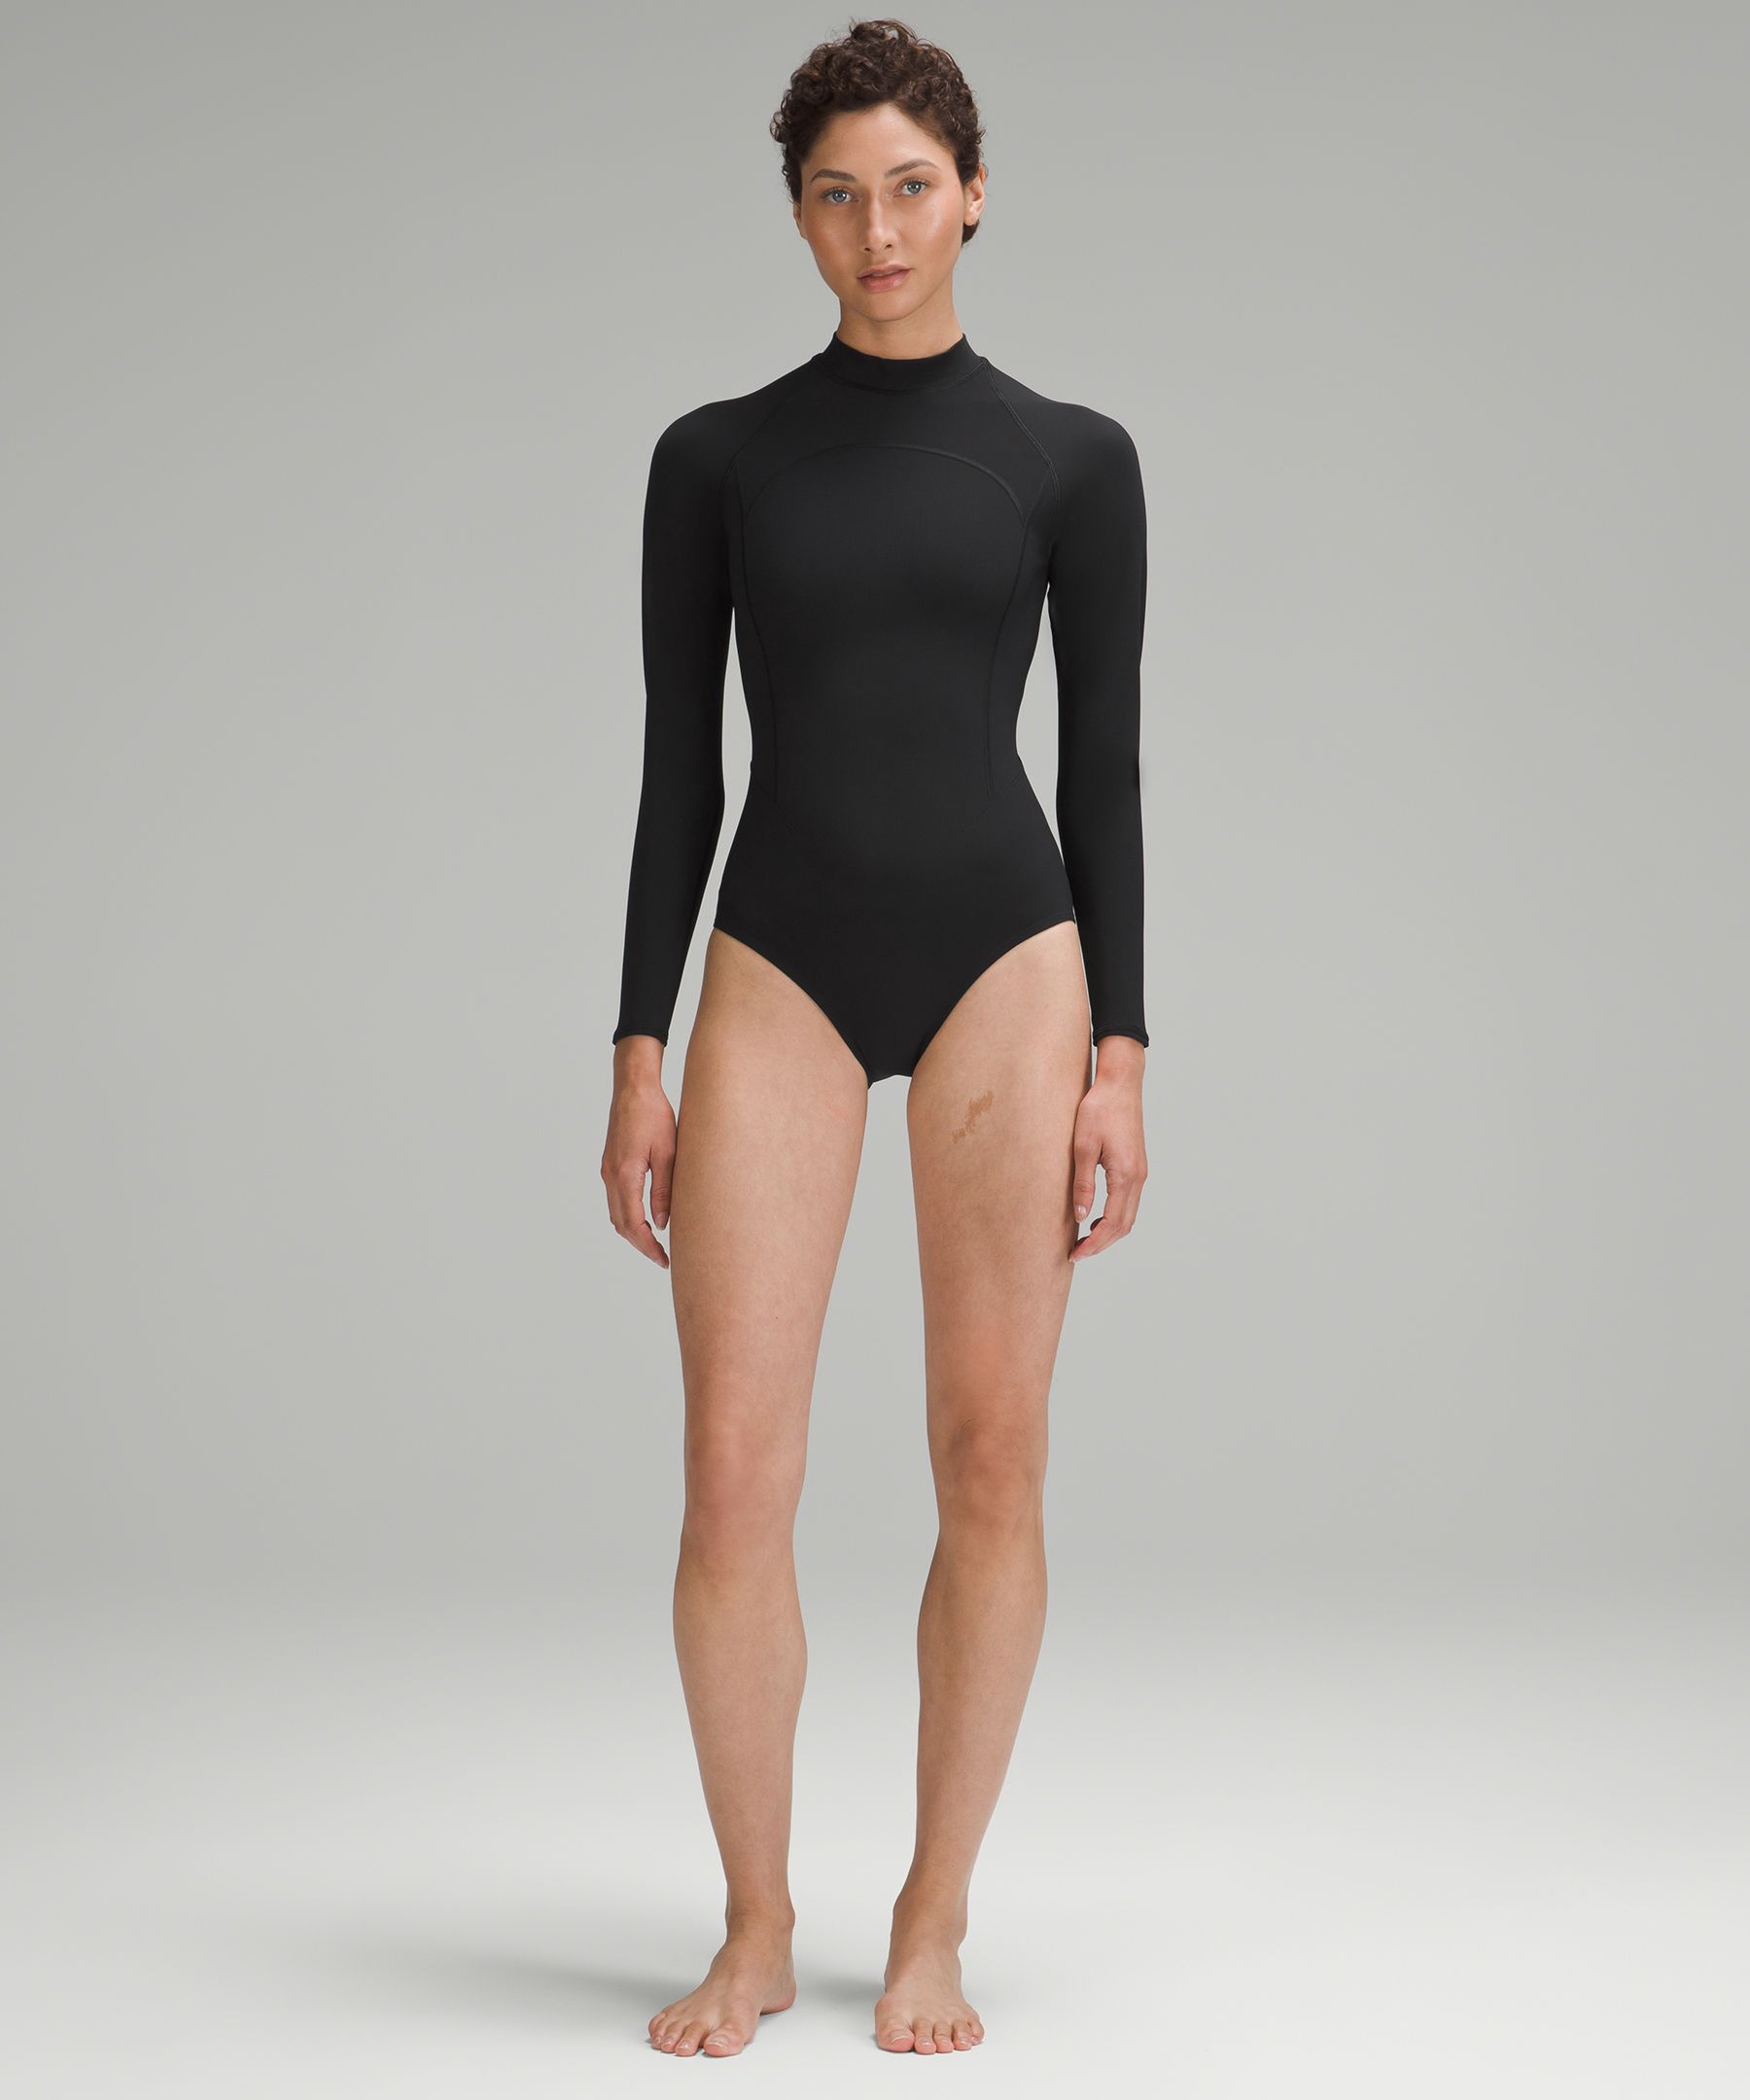 Long-Sleeve Zip-Back Paddle Suit | Swimwear | Lululemon FR